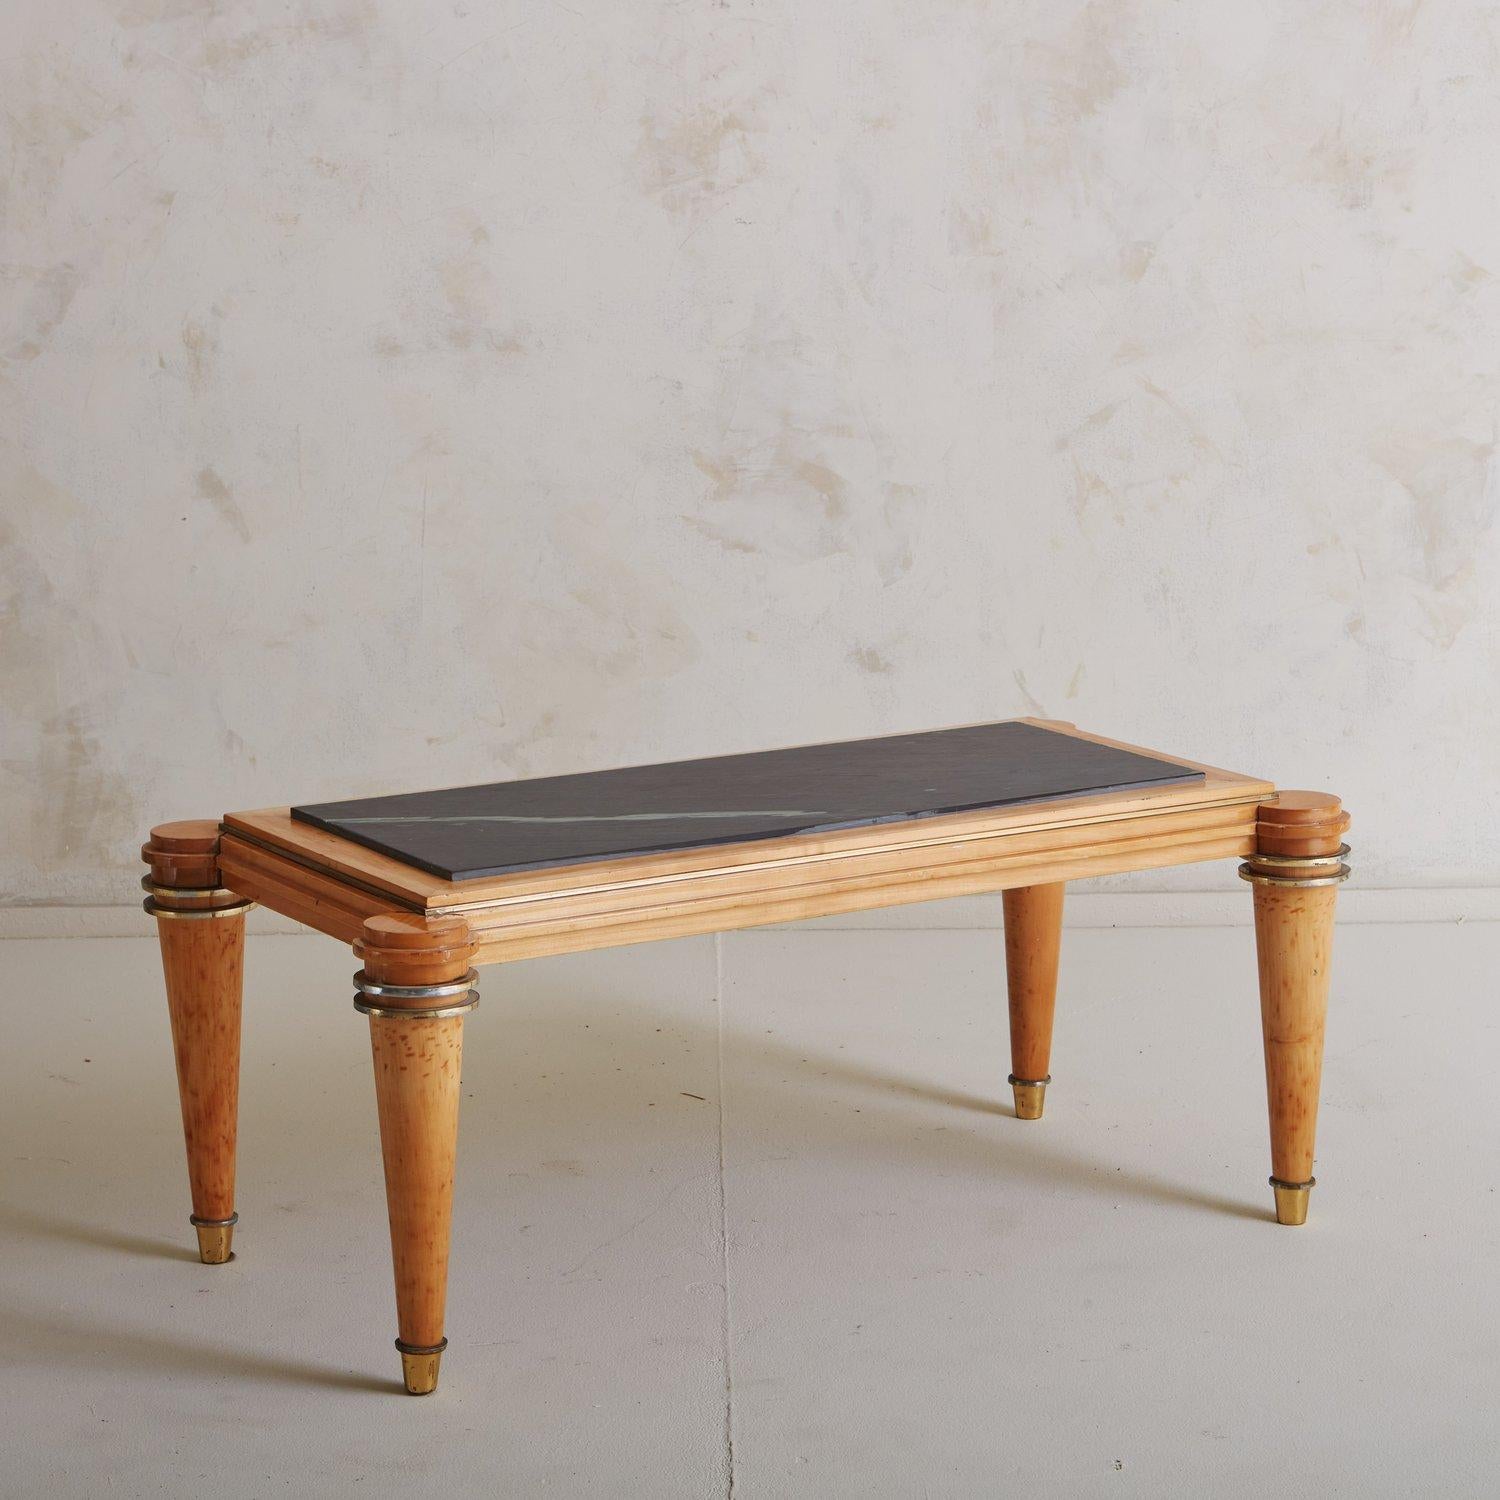 Une table basse Art Déco des années 1940 attribuée à Etienne Kohlmann. Cette table a un cadre rectangulaire en bois et repose sur quatre pieds ronds et effilés avec des détails circulaires en laiton et des pieds en laiton. Le plateau est en pierre